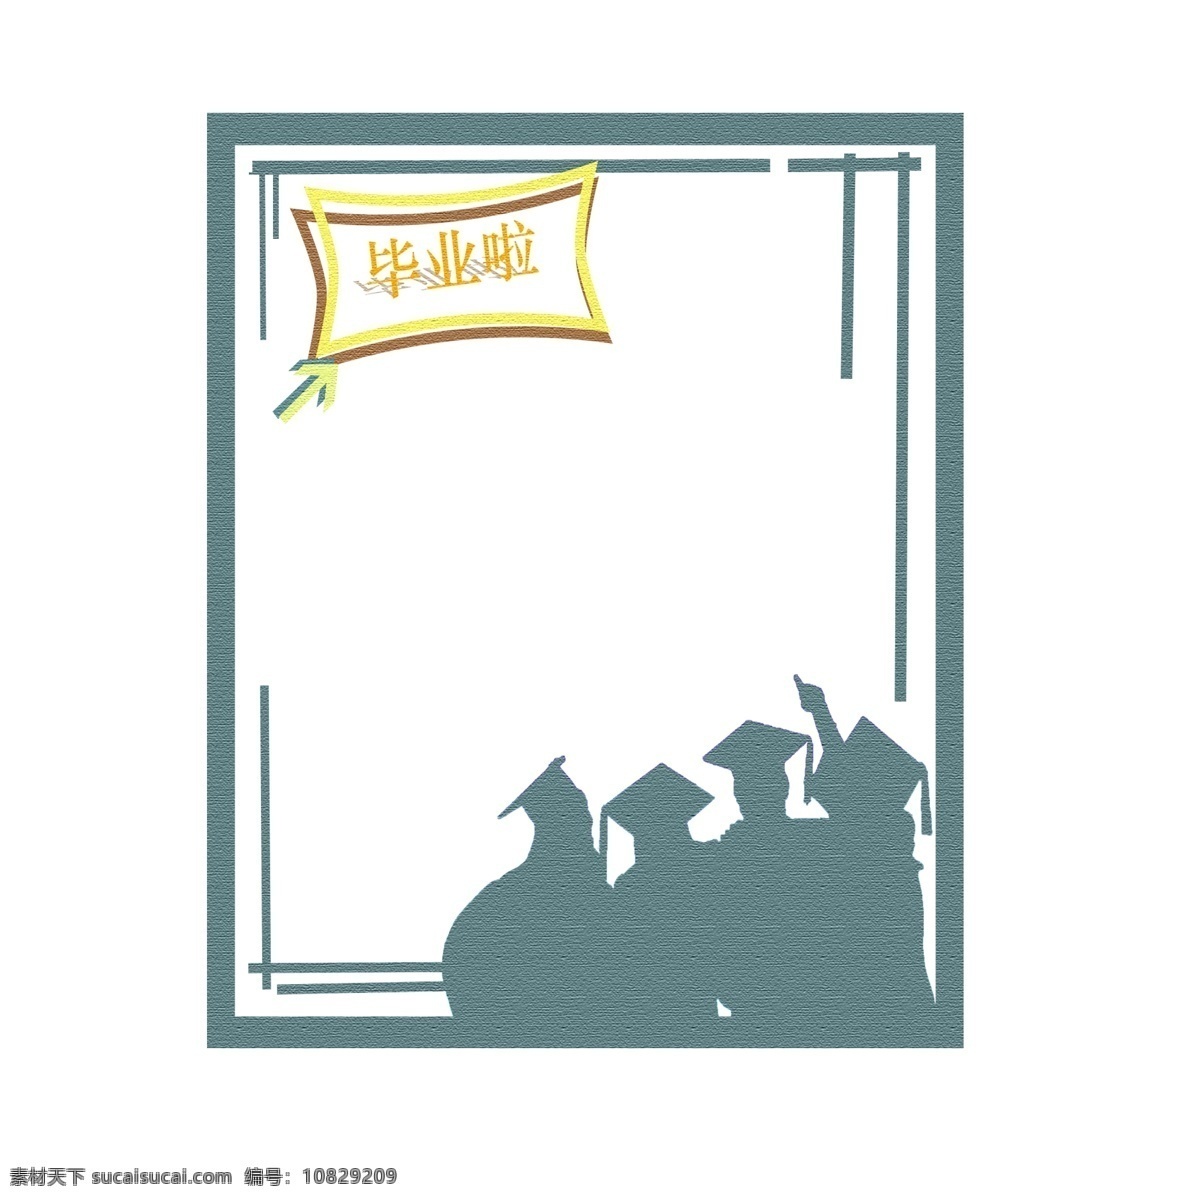 毕业季卡通 告别 卡通 毕业 纸张 简洁 手绘